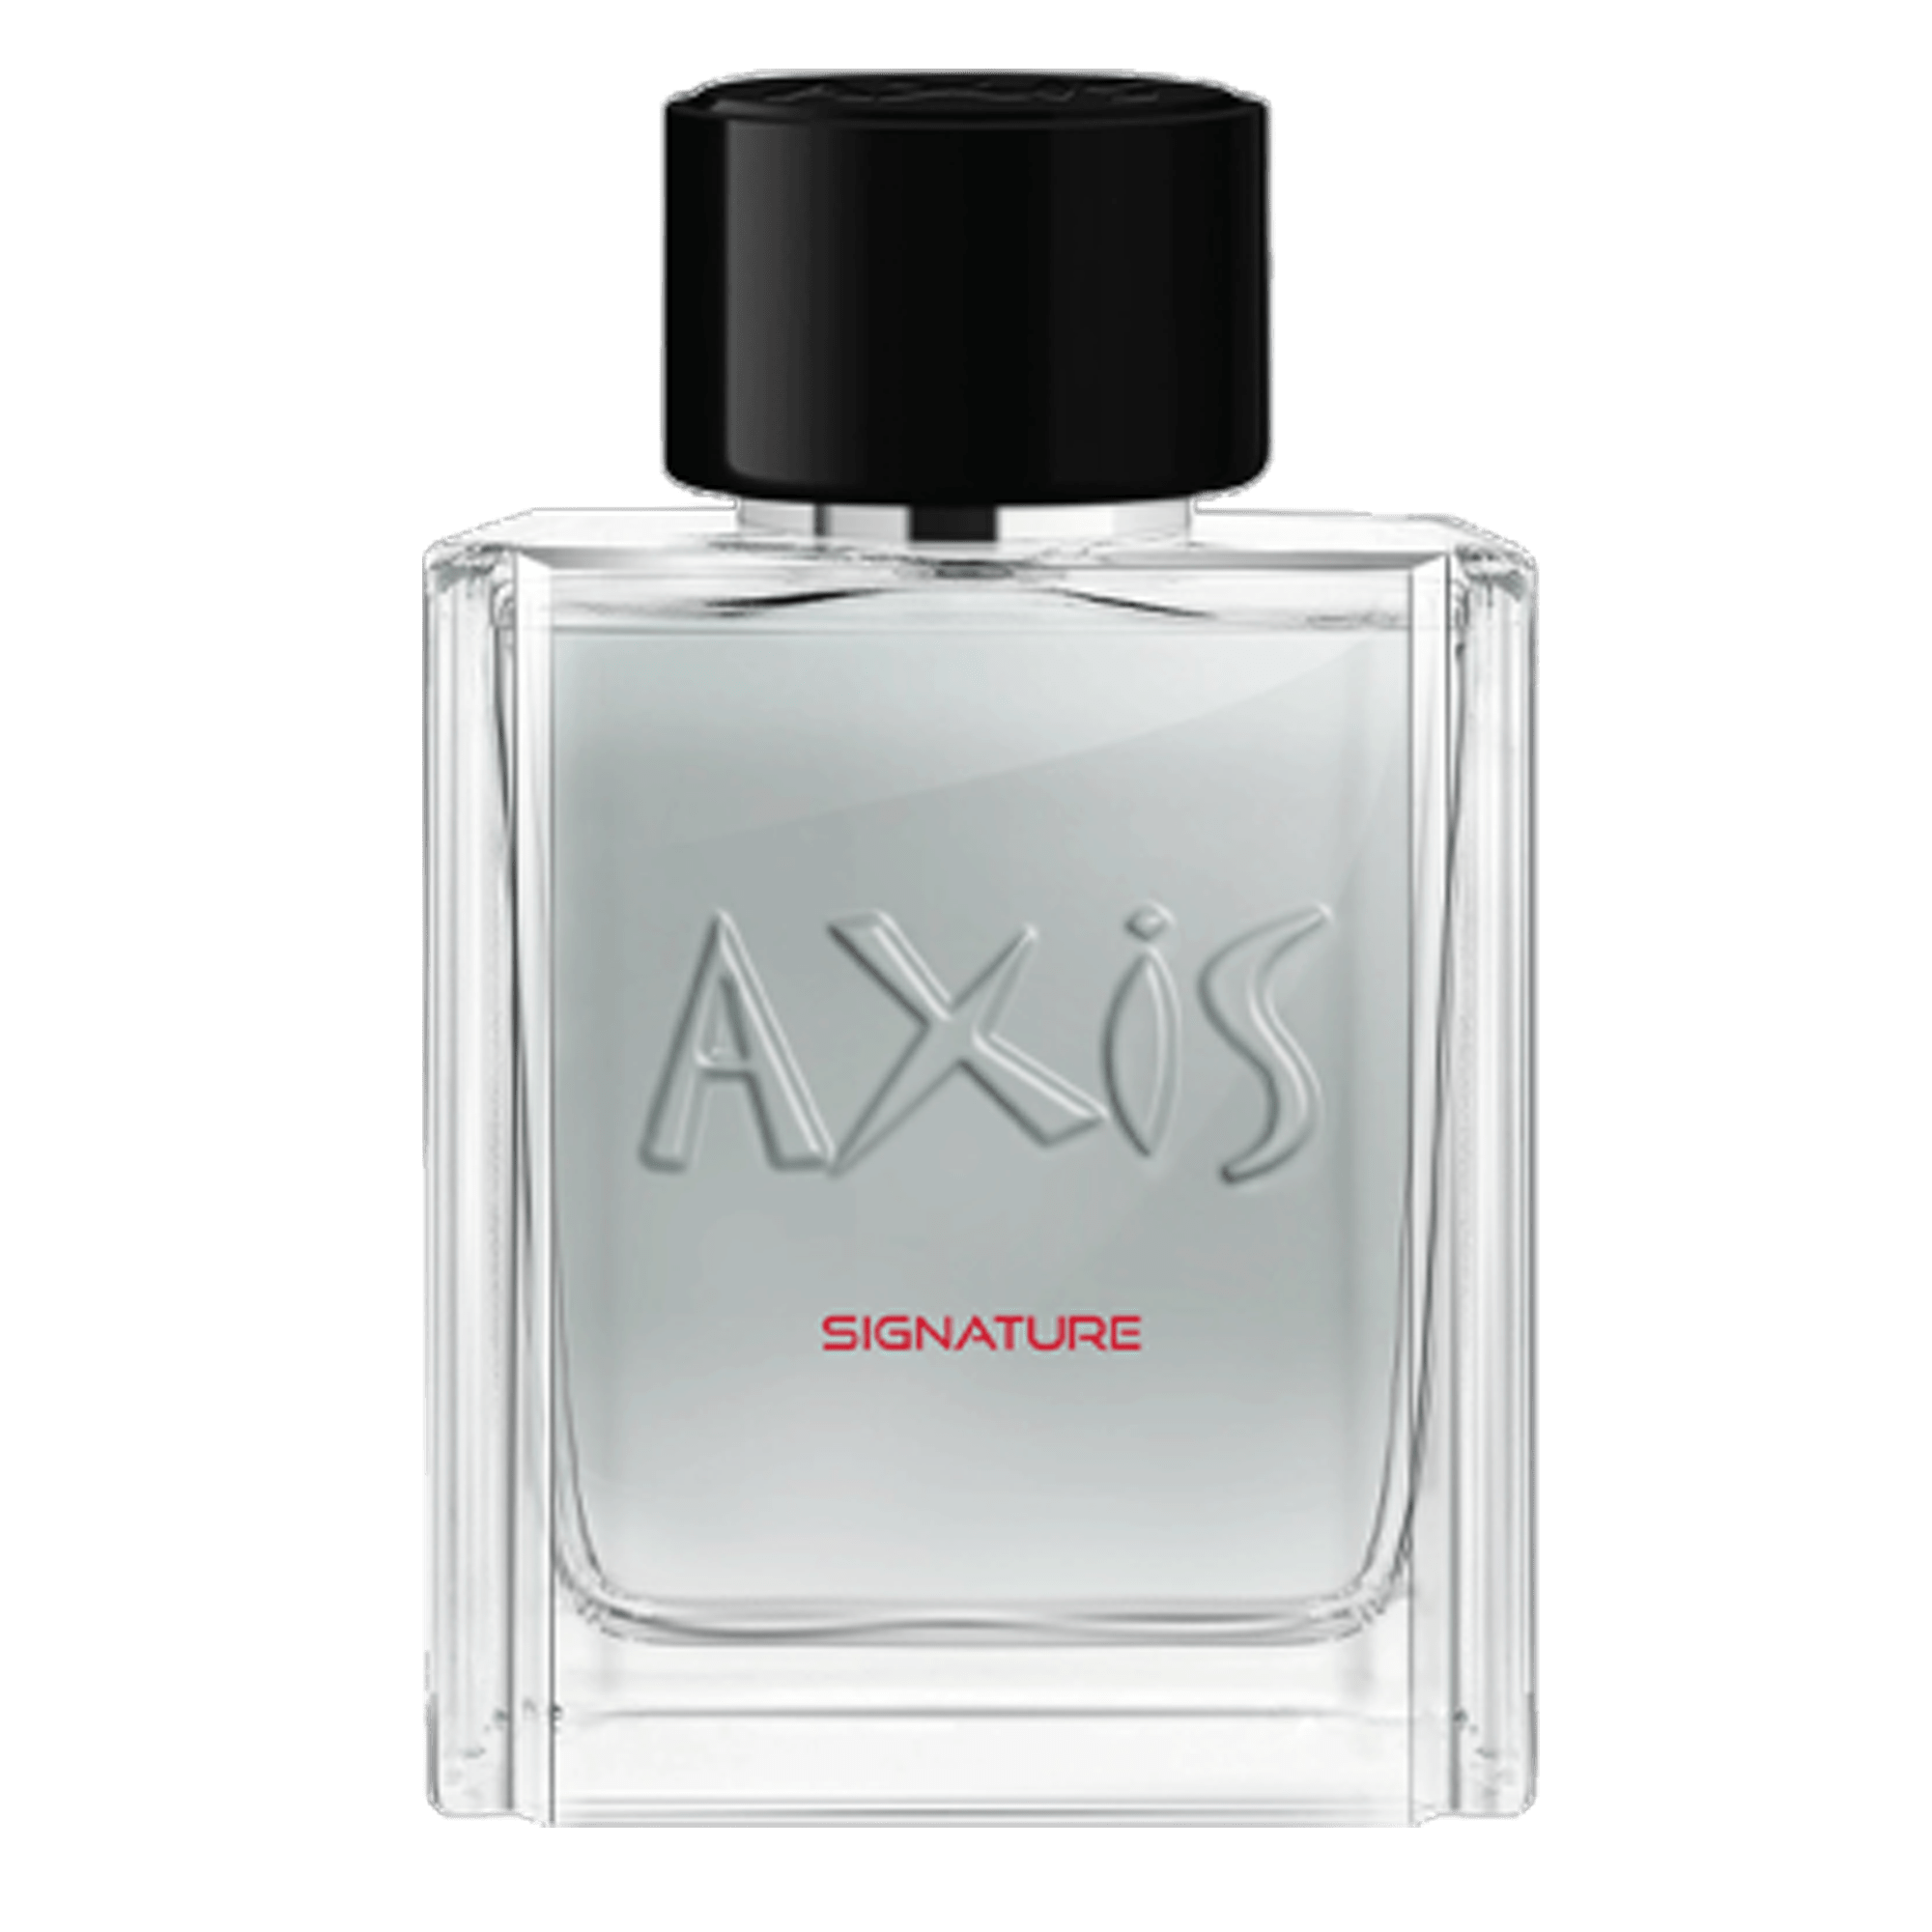 Axis Signature Pour Homme Eau De Toilette Perfume Masculino 100ml